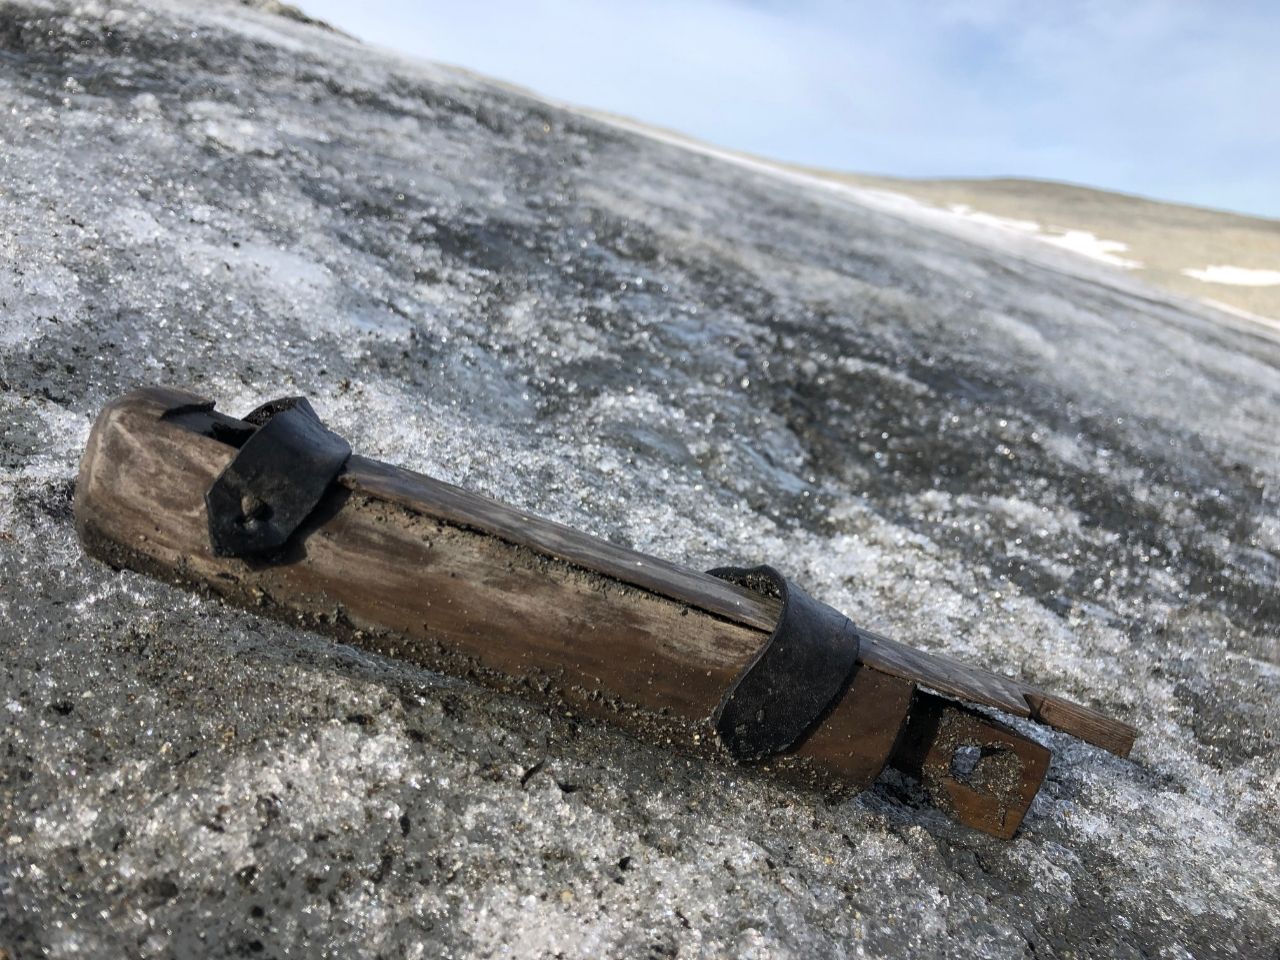 ذوب شدن یخ ها، گذرگاه گمشده دوران وایکینگ ها و آثار باستانی را در نروژ 5 نشان می دهد